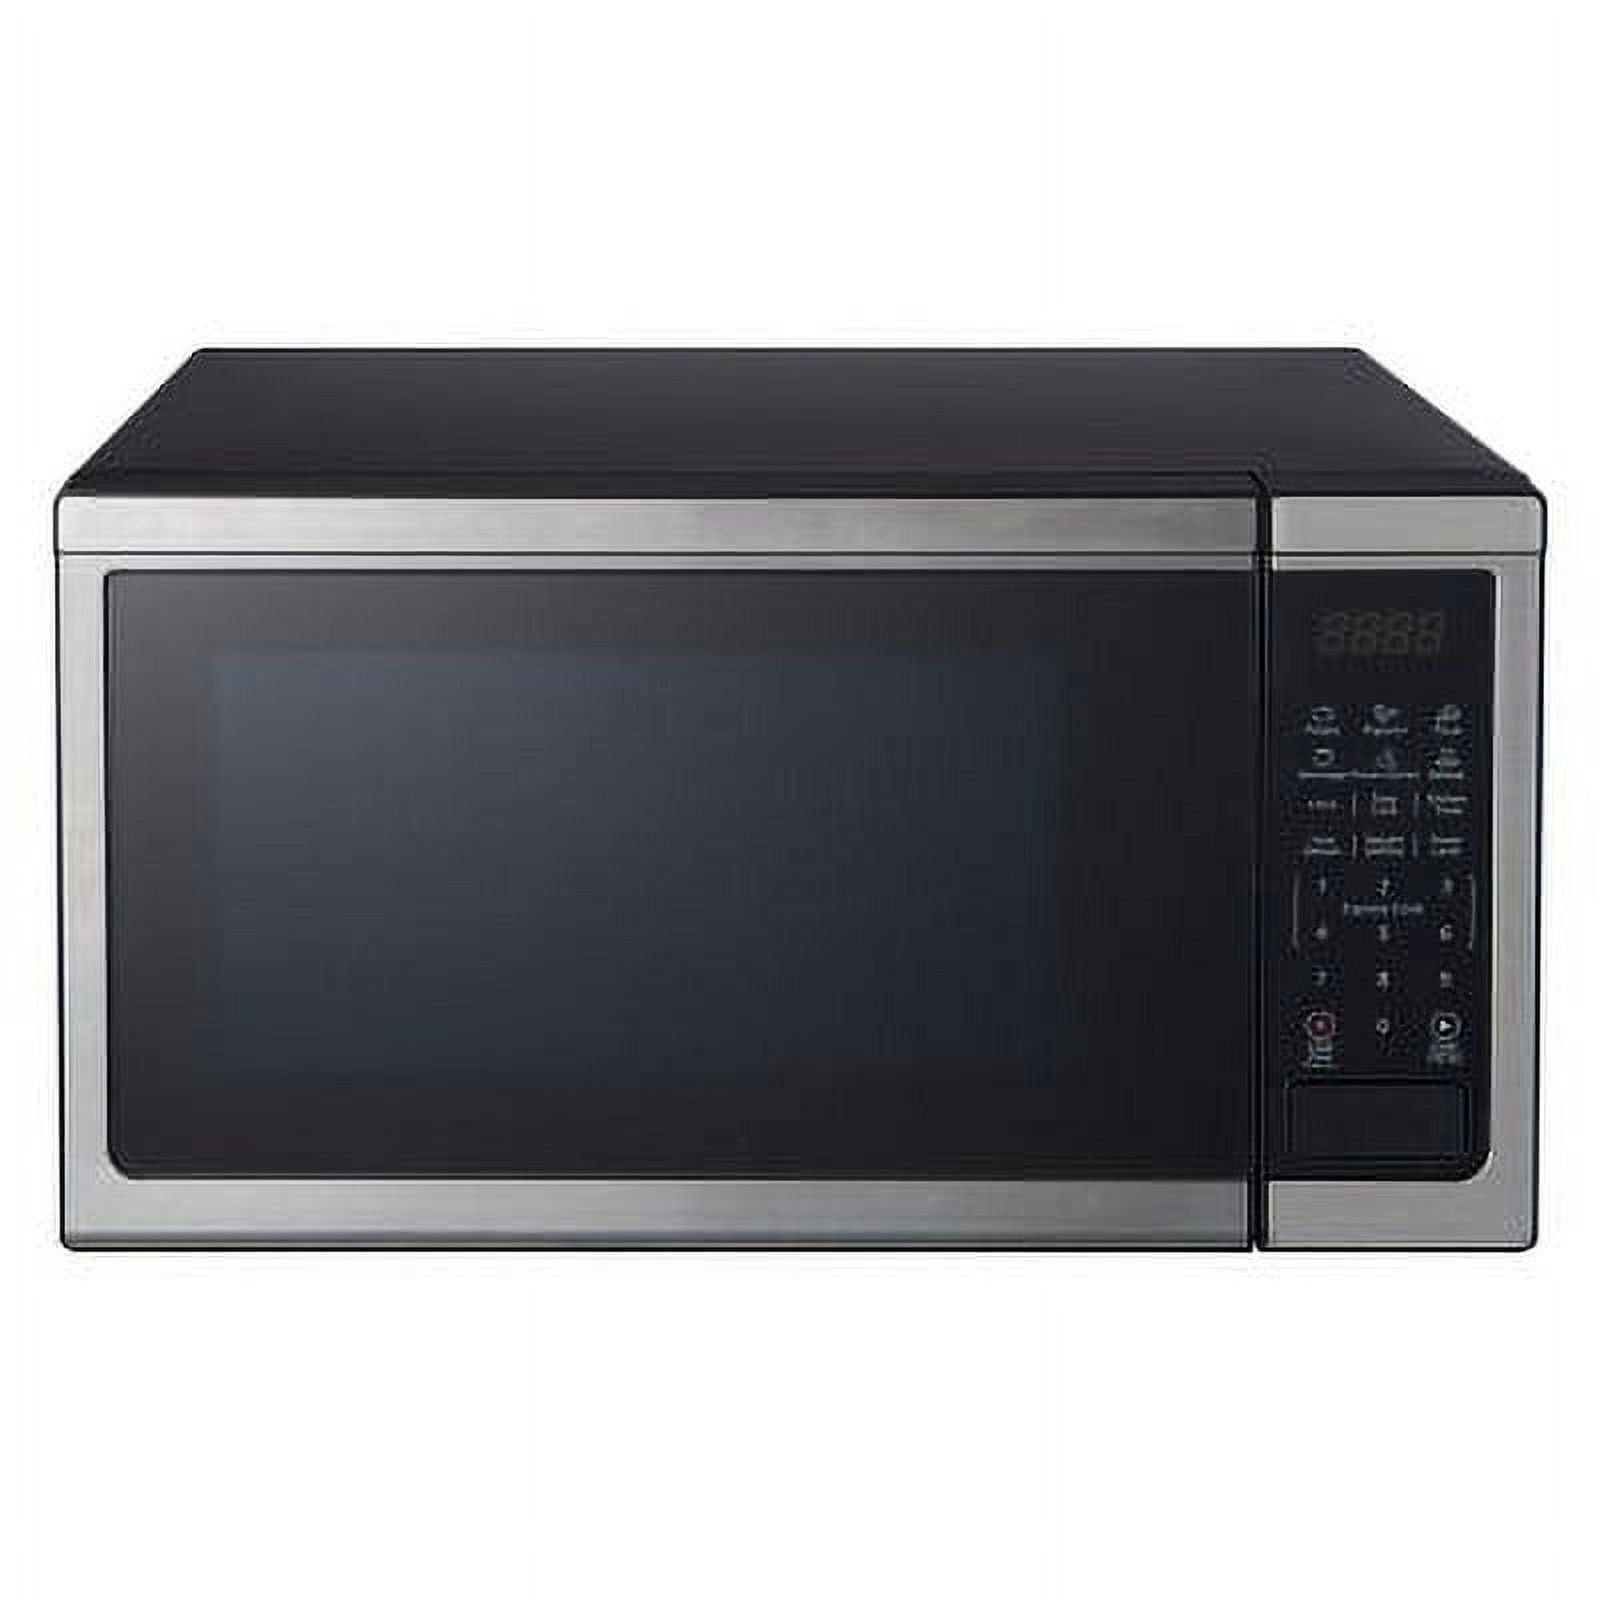 Oster Microondas 10 niveles con 6 programas de cocina 1000W OGMM41010